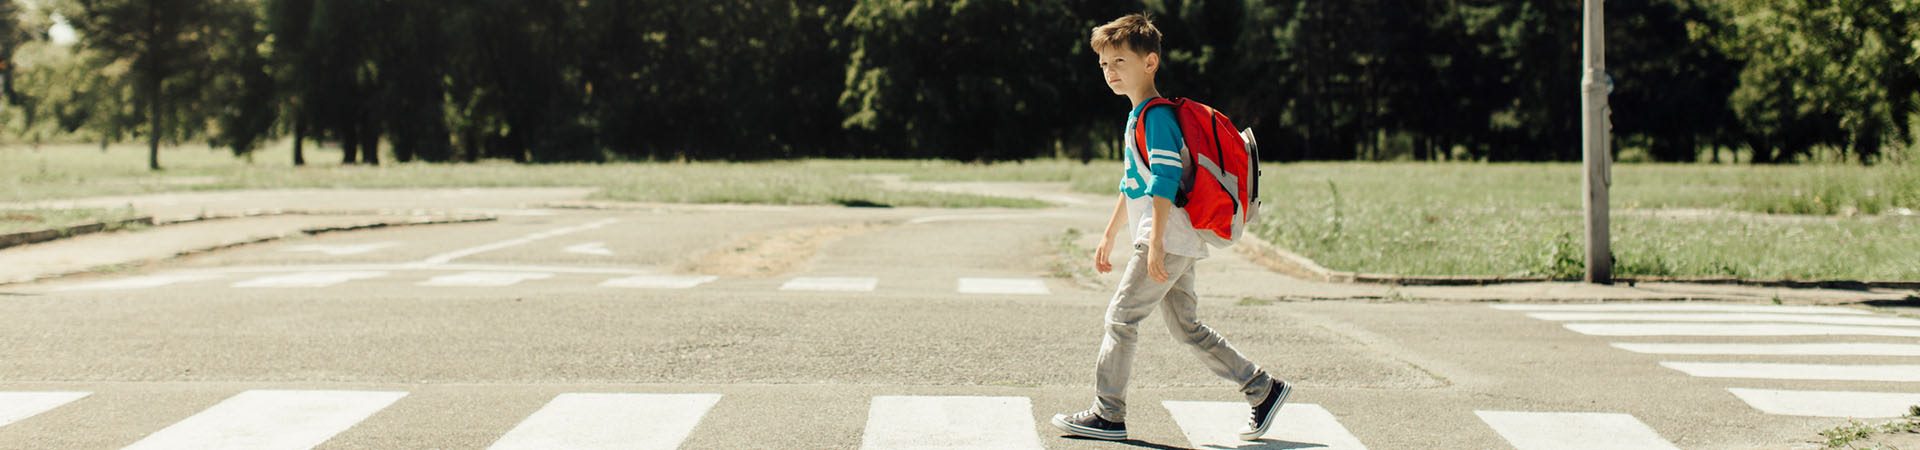 Bezpieczna droga do szkoły – dziecko na przejściu dla pieszych